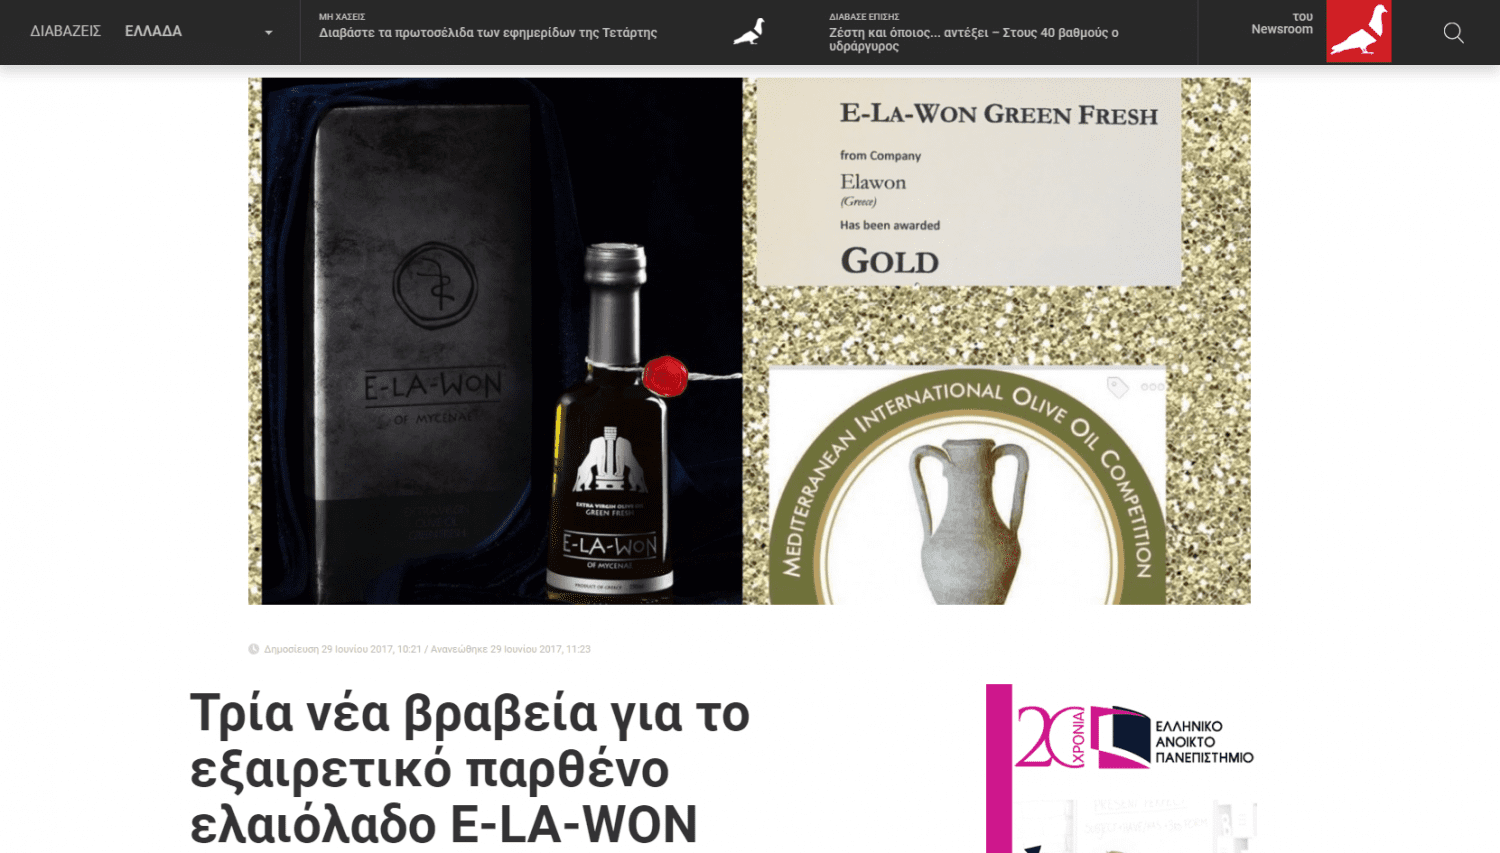 newpost.gr: “Τρία νέα βραβεία για το εξαιρετικό παρθένο ελαιόλαδο E-LA-WON”